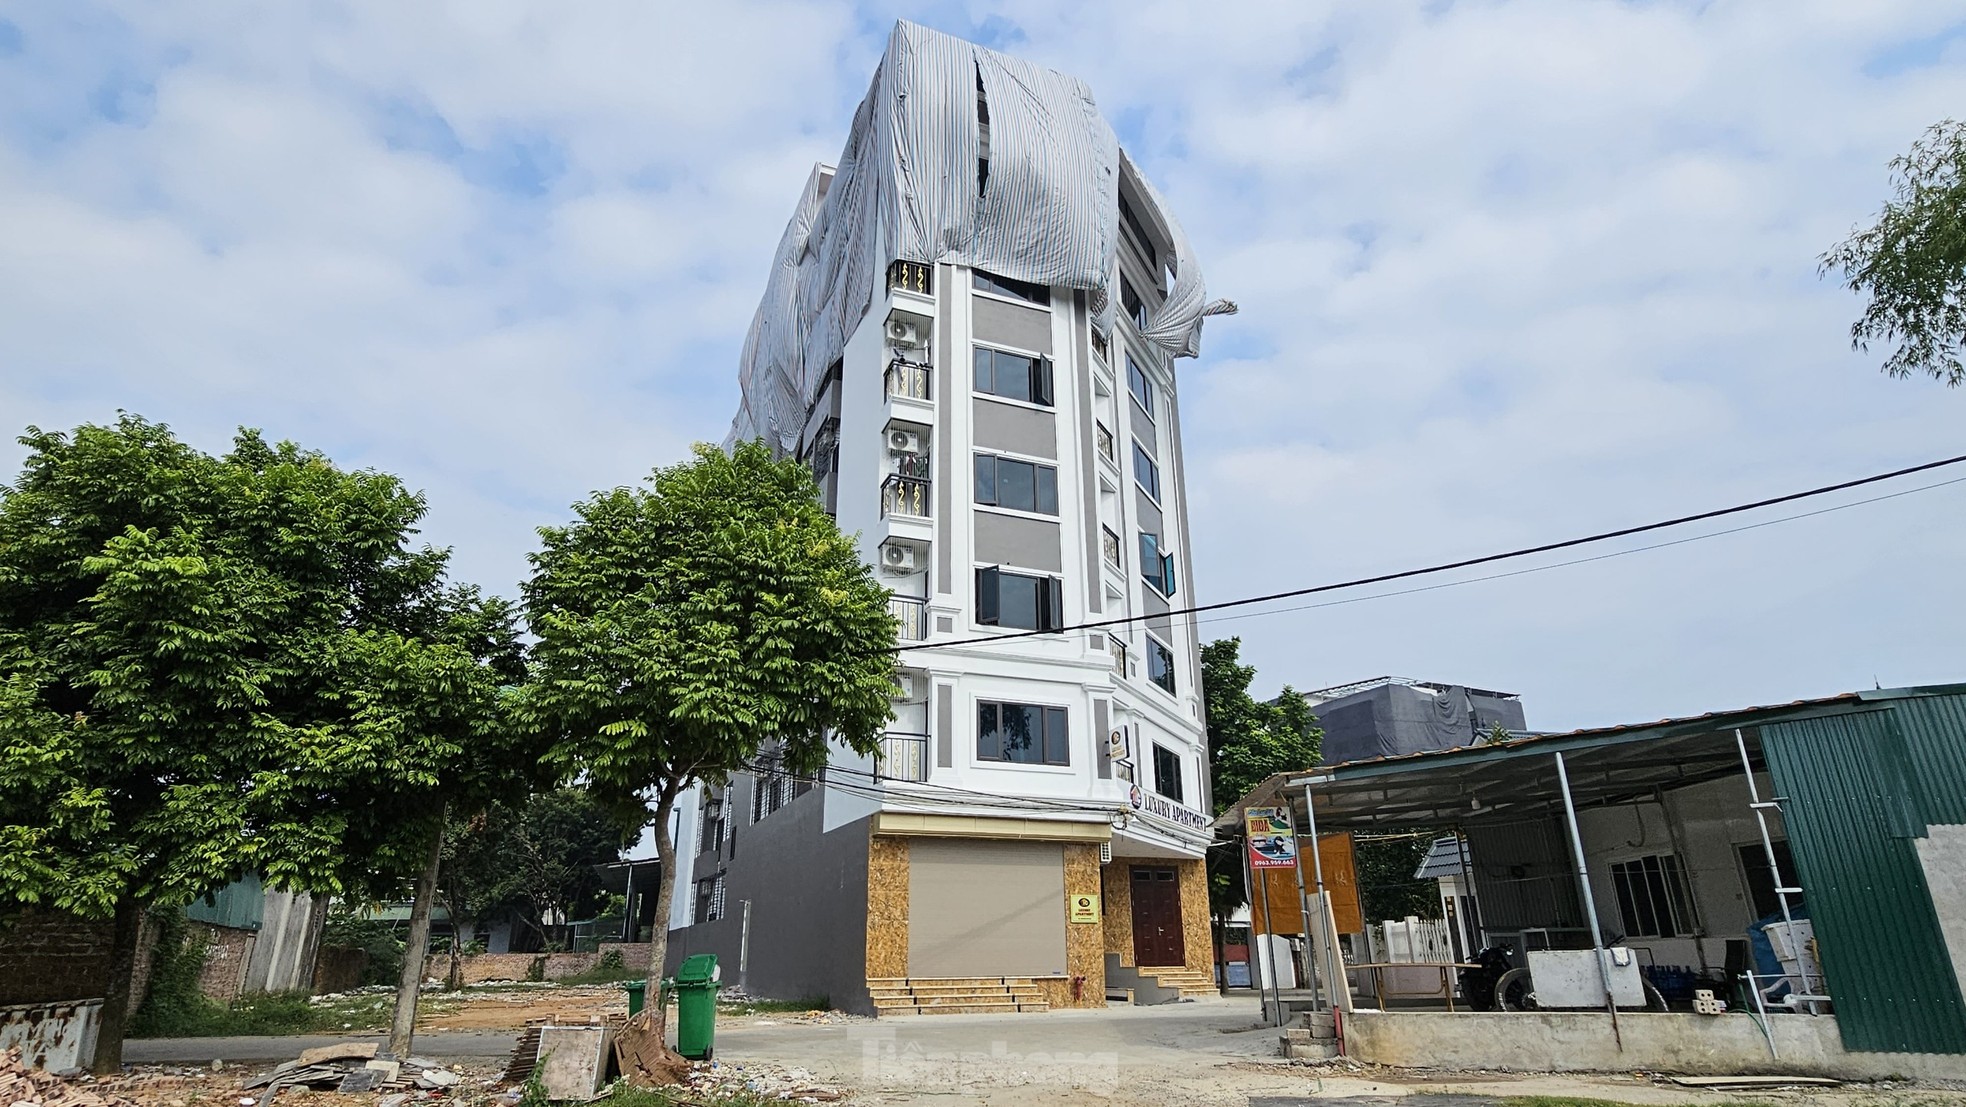 Thủ phủ chung cư mini sai phép ngoại thành Hà Nội bất ngờ 'trùm mền' - Ảnh 10.